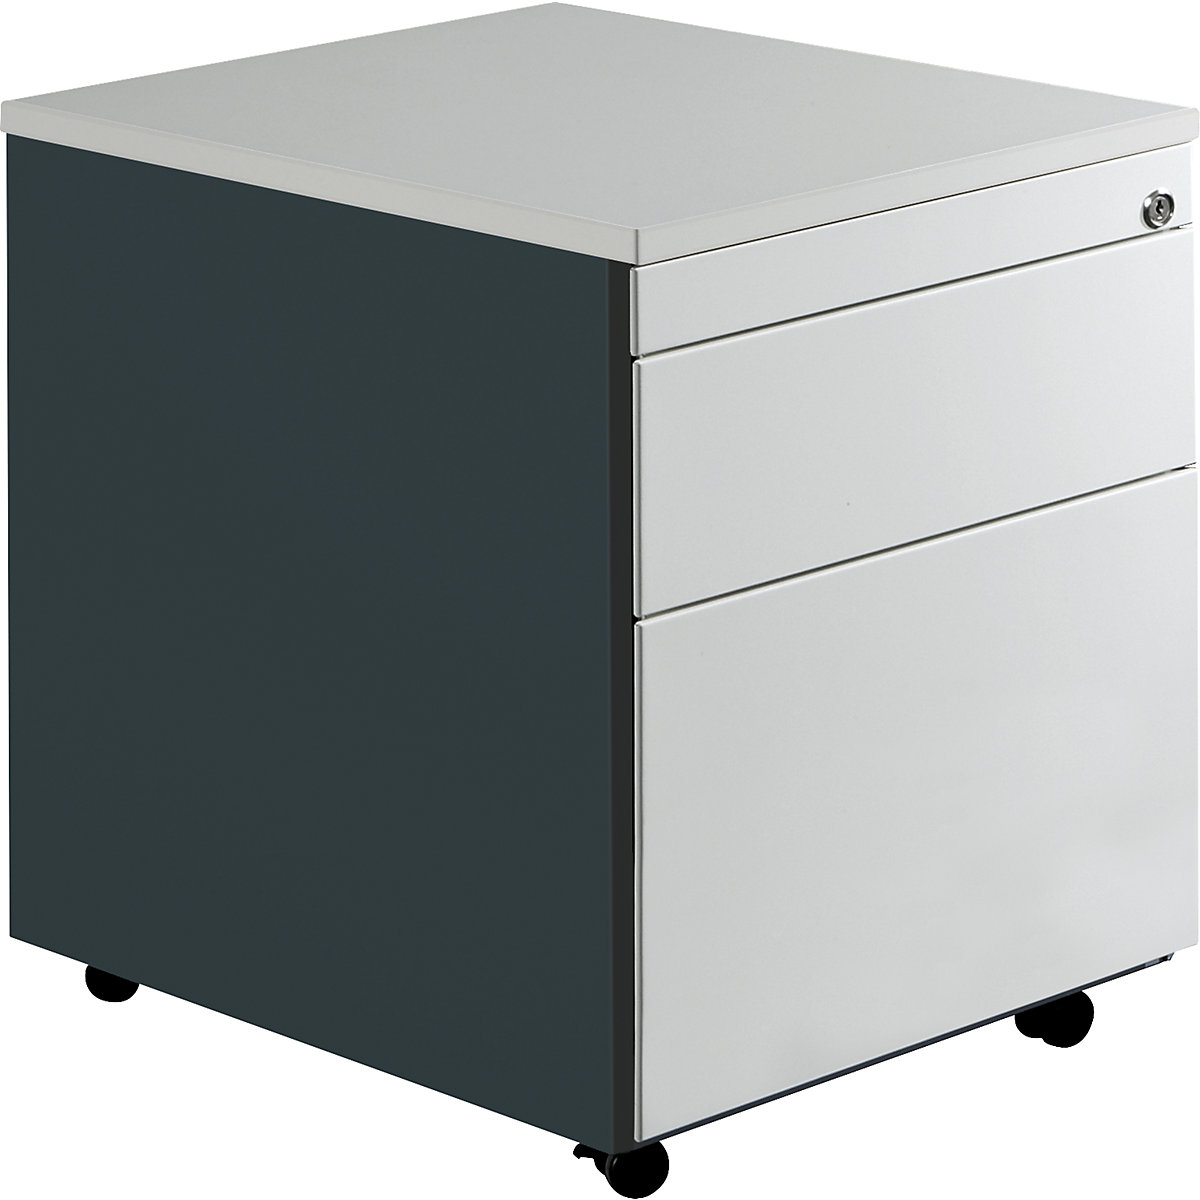 Zásuvkový kontejner s koly – mauser, v x h 579 x 600 mm, 1 zásuvka na materiál, 1 kartotéka pro závěsné složky, antracitově šedá / světle šedá / světle šedá-3